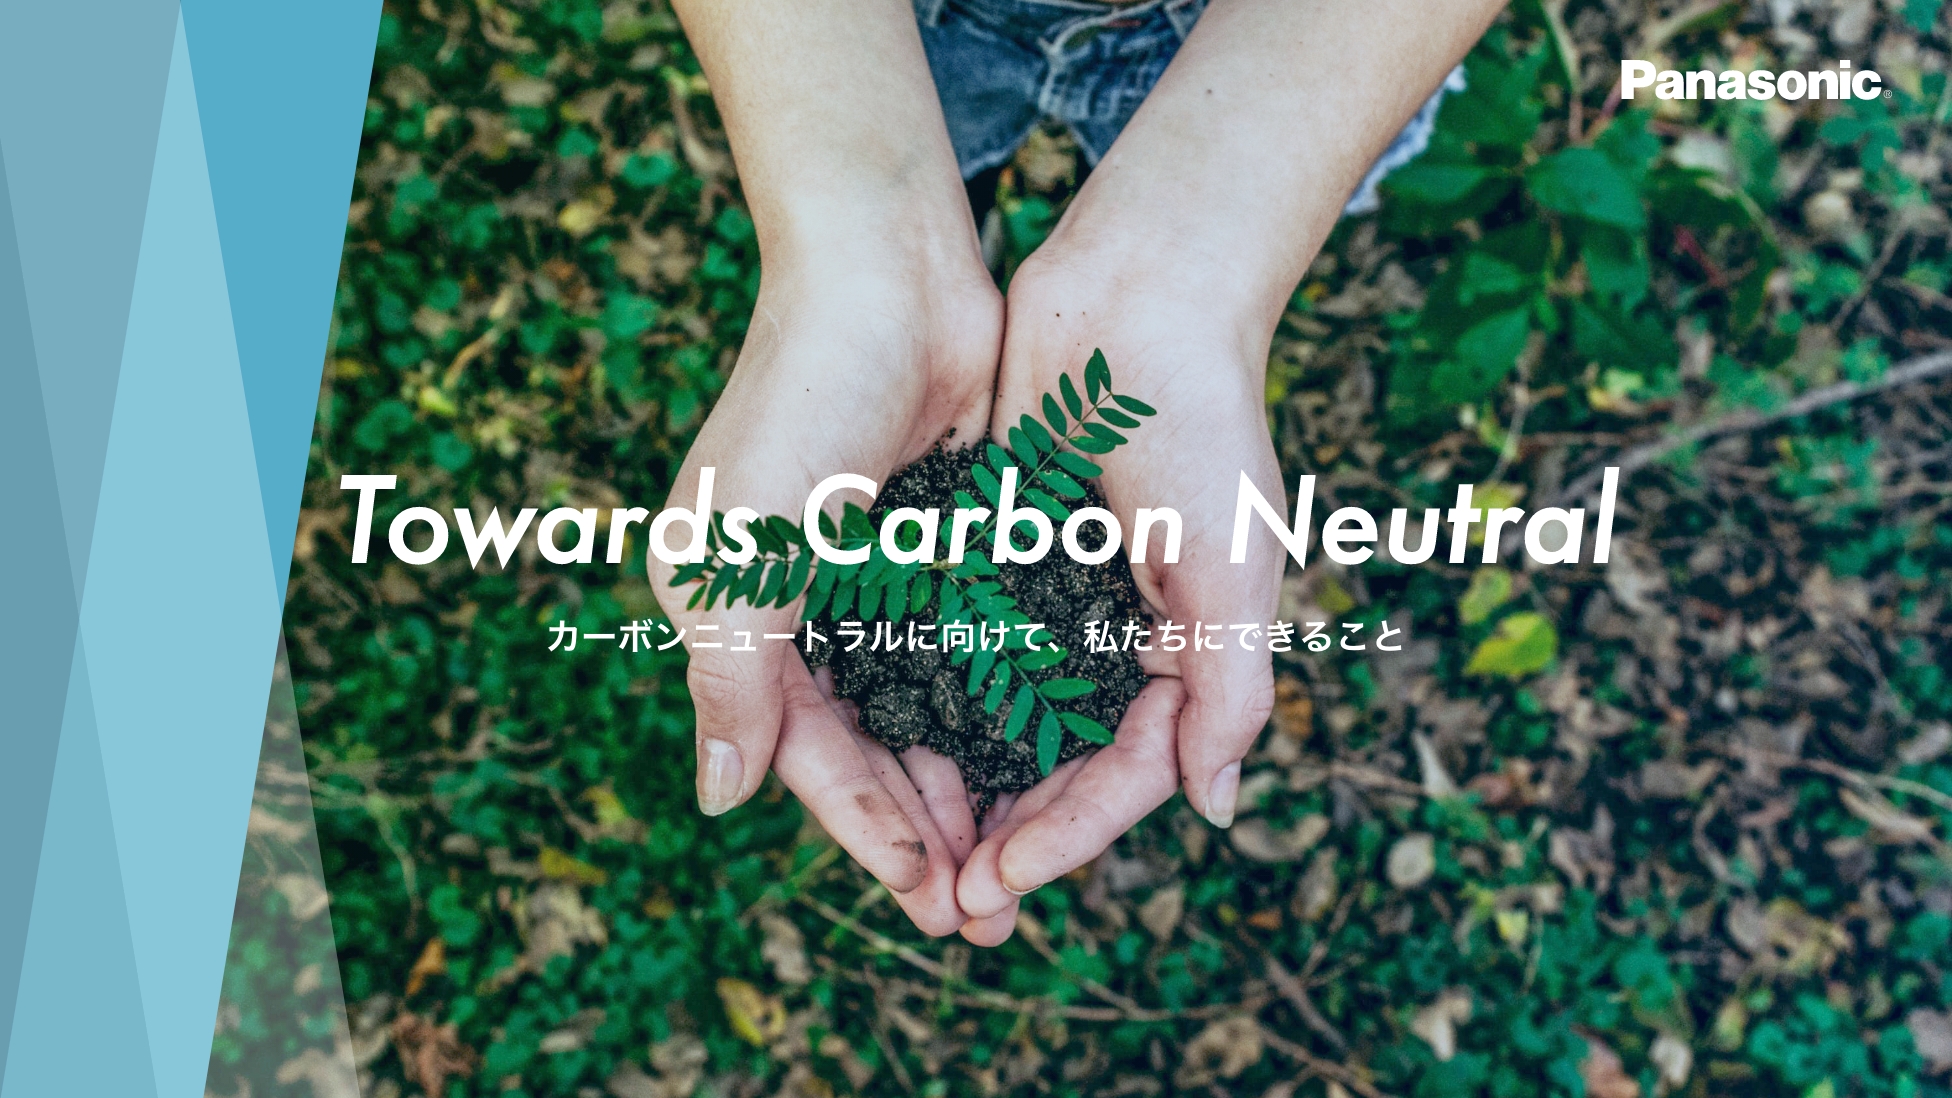 Towards Carbon Nutral カーボンニュートラルに向けて、私たちにできること